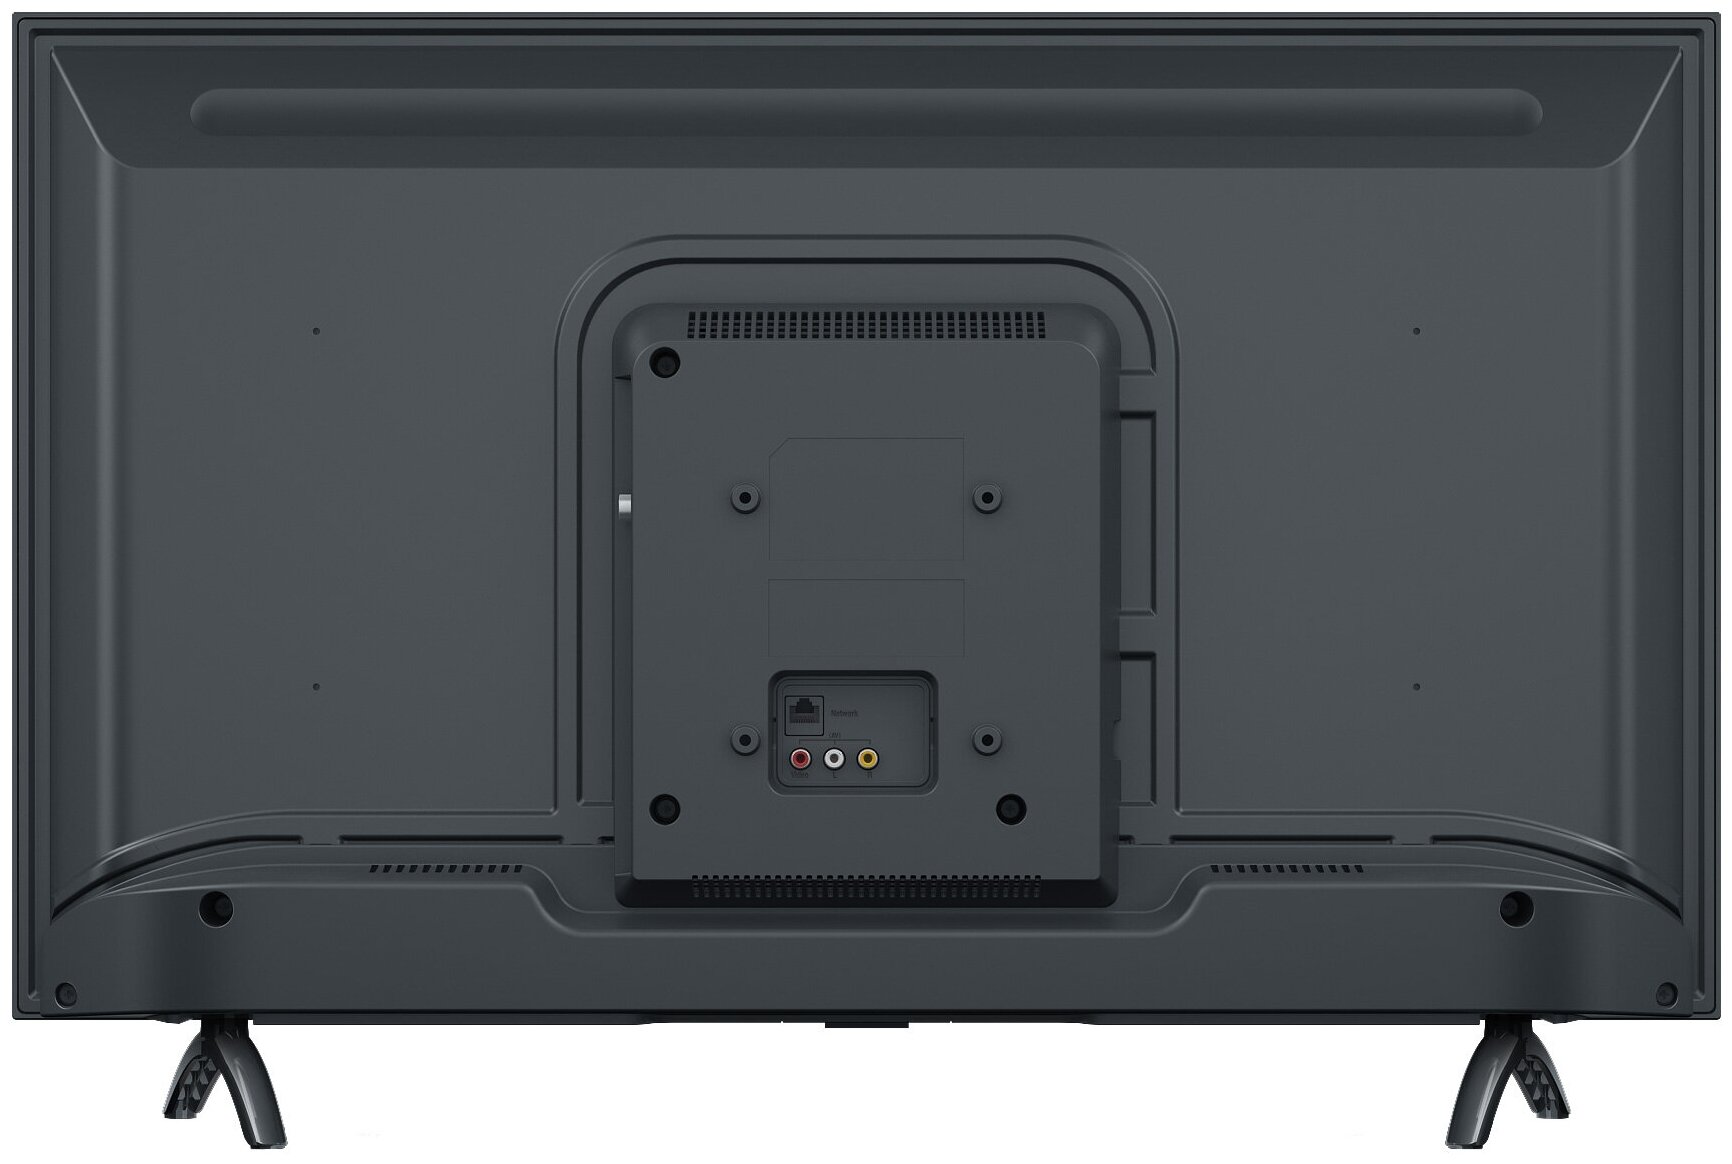 Xiaomi Mi Tv 4a 43 Черный